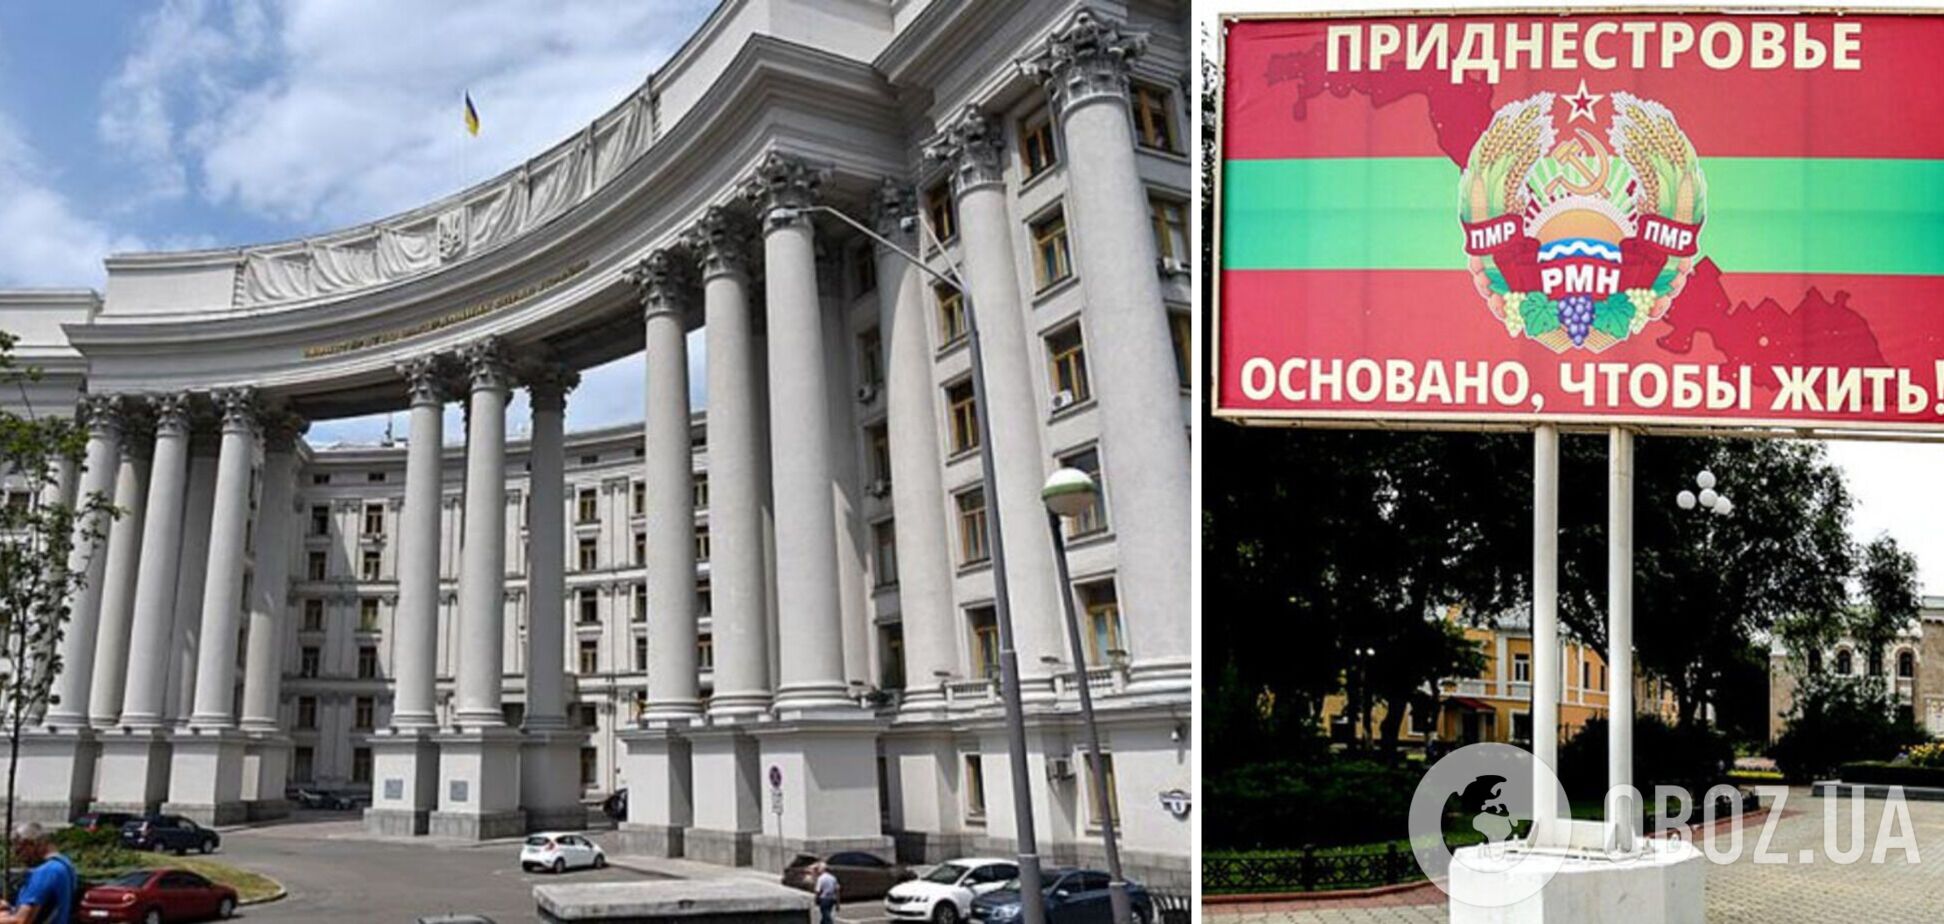 'Россия не может быть миротворцем': МИД Украины отреагировало на обращение 'Приднестровье'